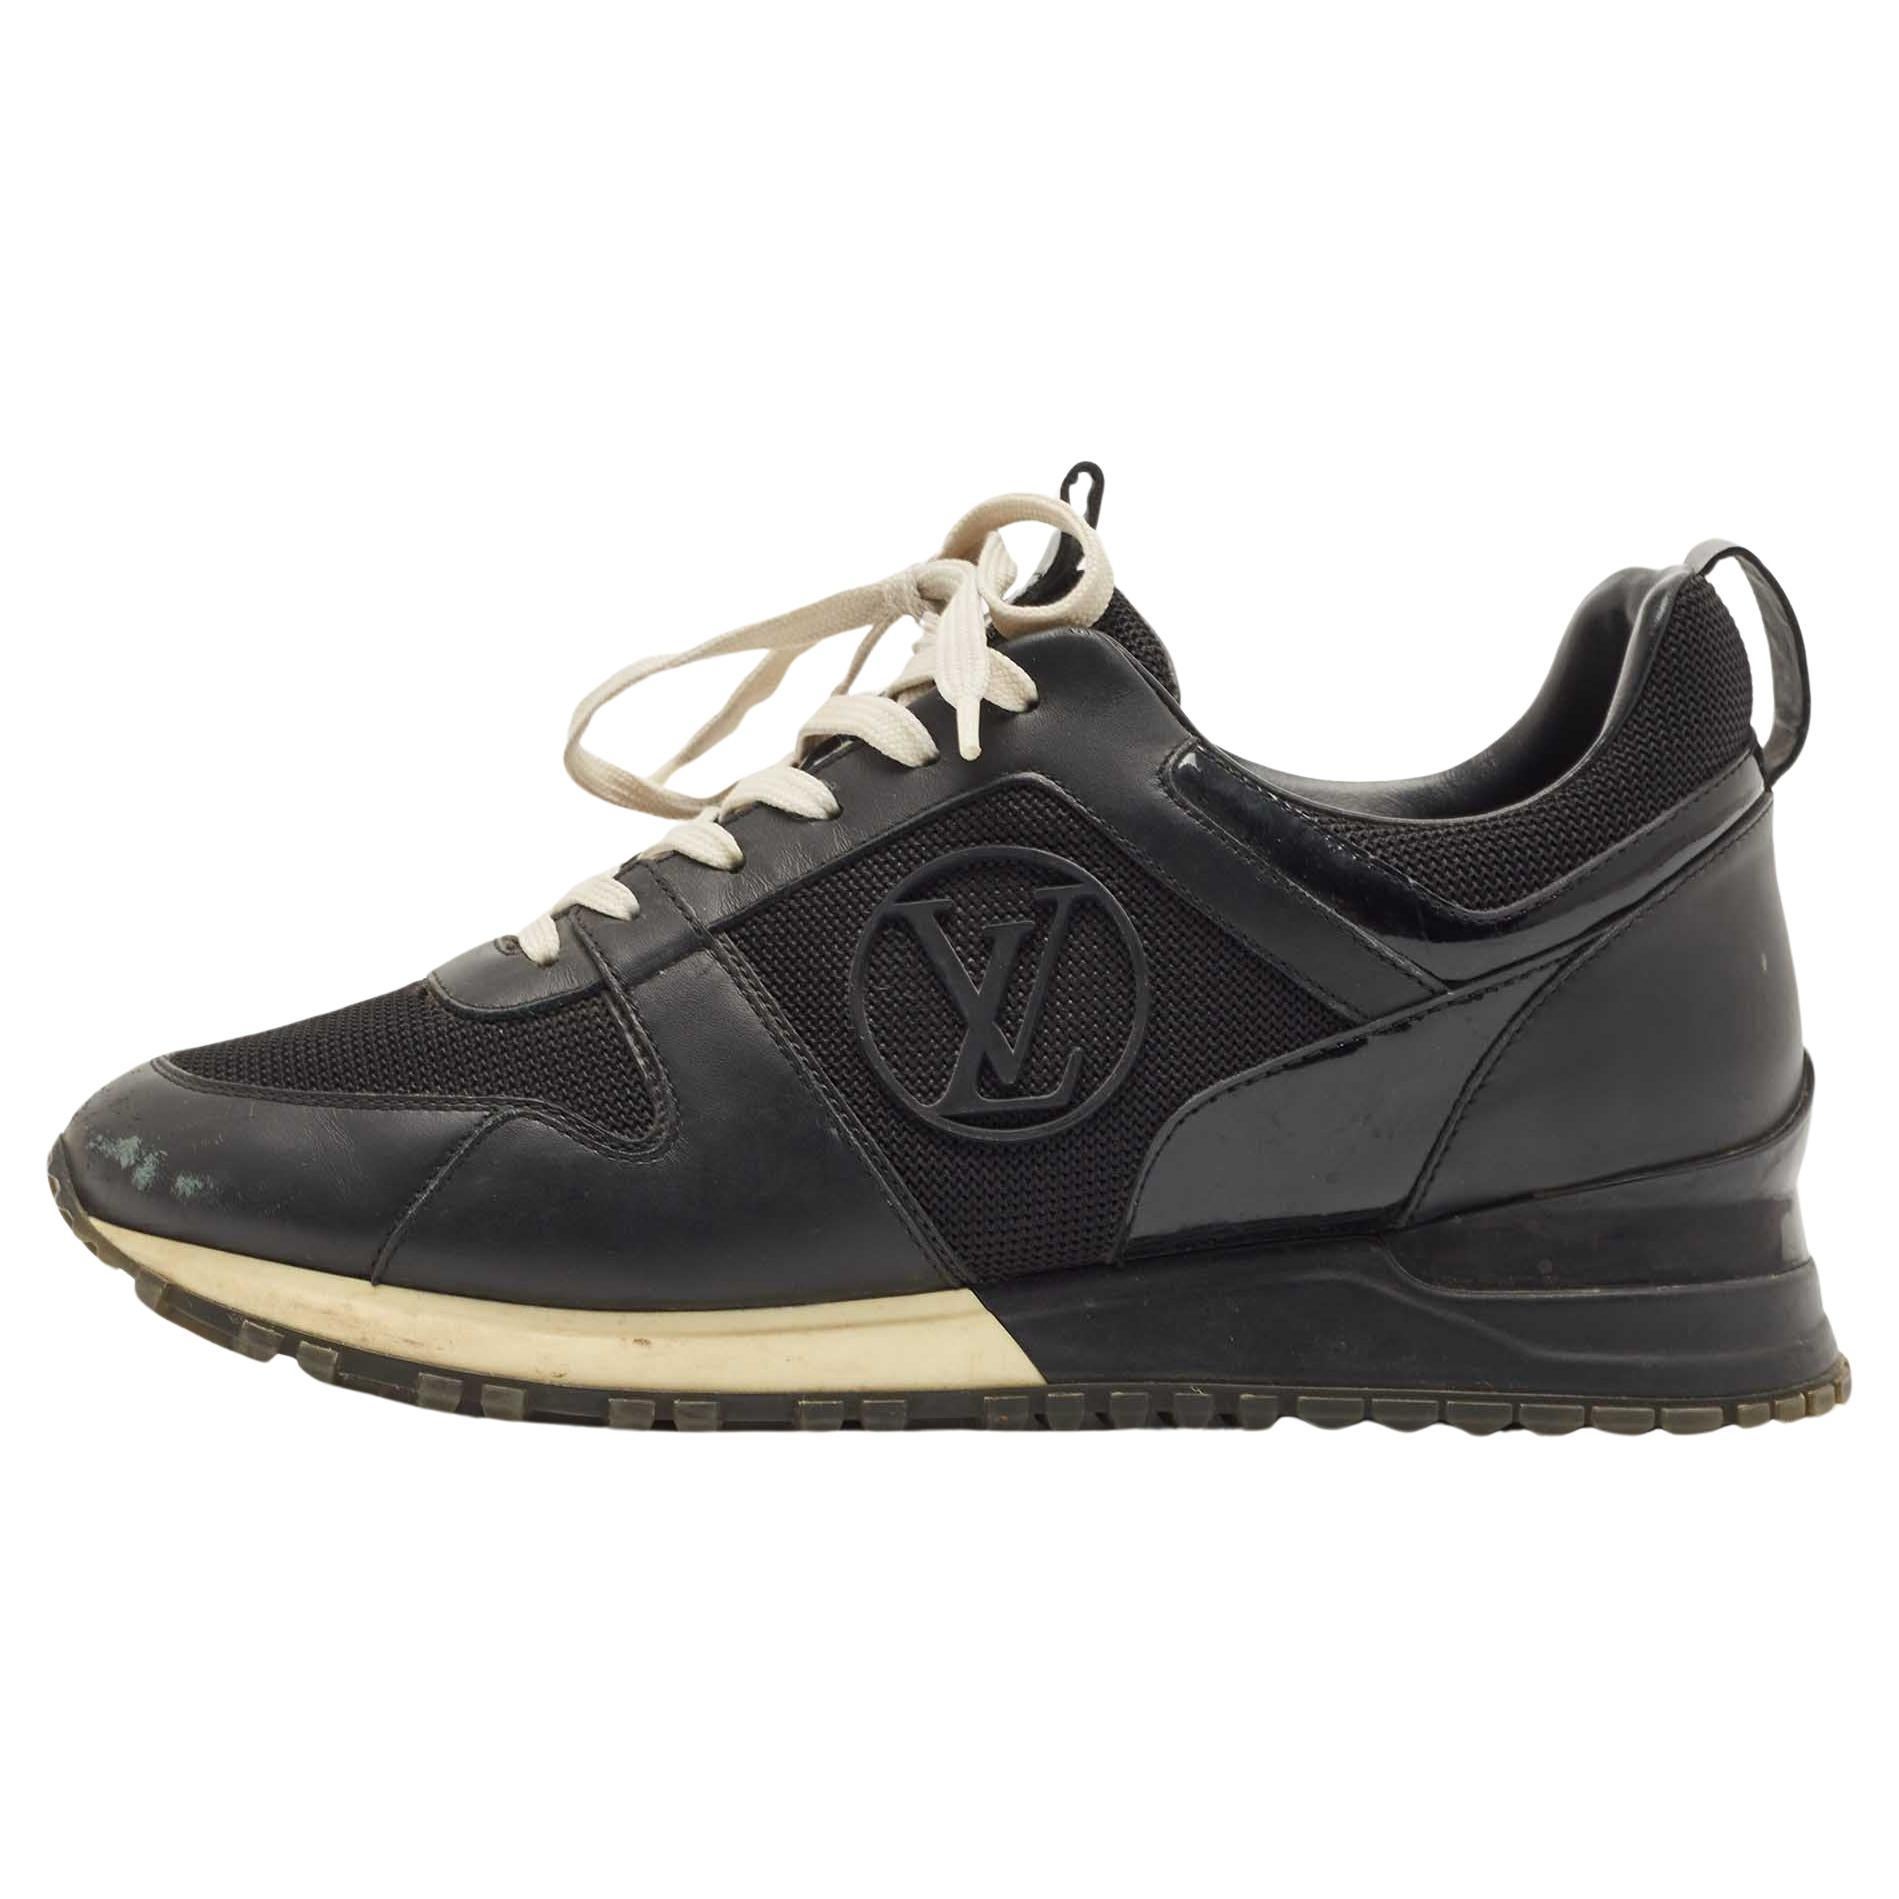 Louis Vuitton Run Away Sneaker BLACK. Size 38.5